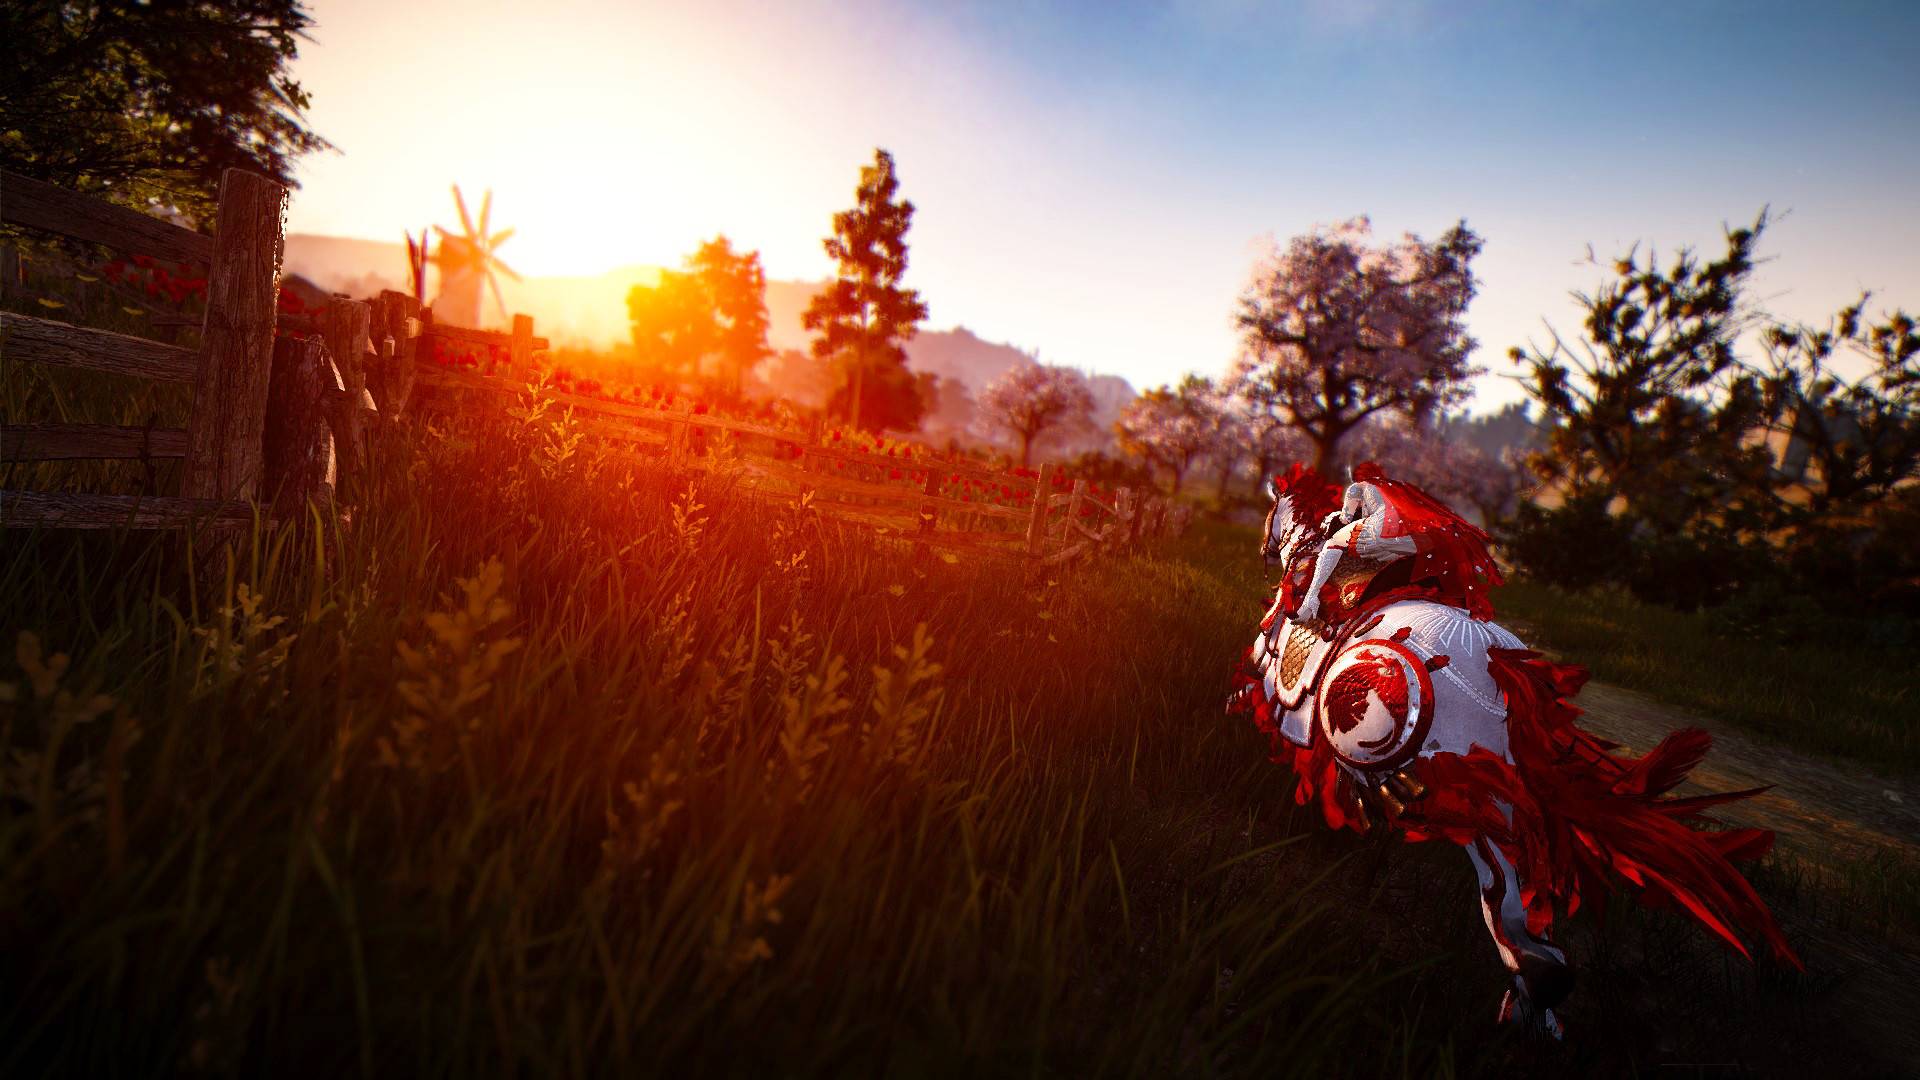 En İyi MMORPG Oyunları: Black Desert Online. Resim, gün batımına doğru ata binen bir adamı gösterir